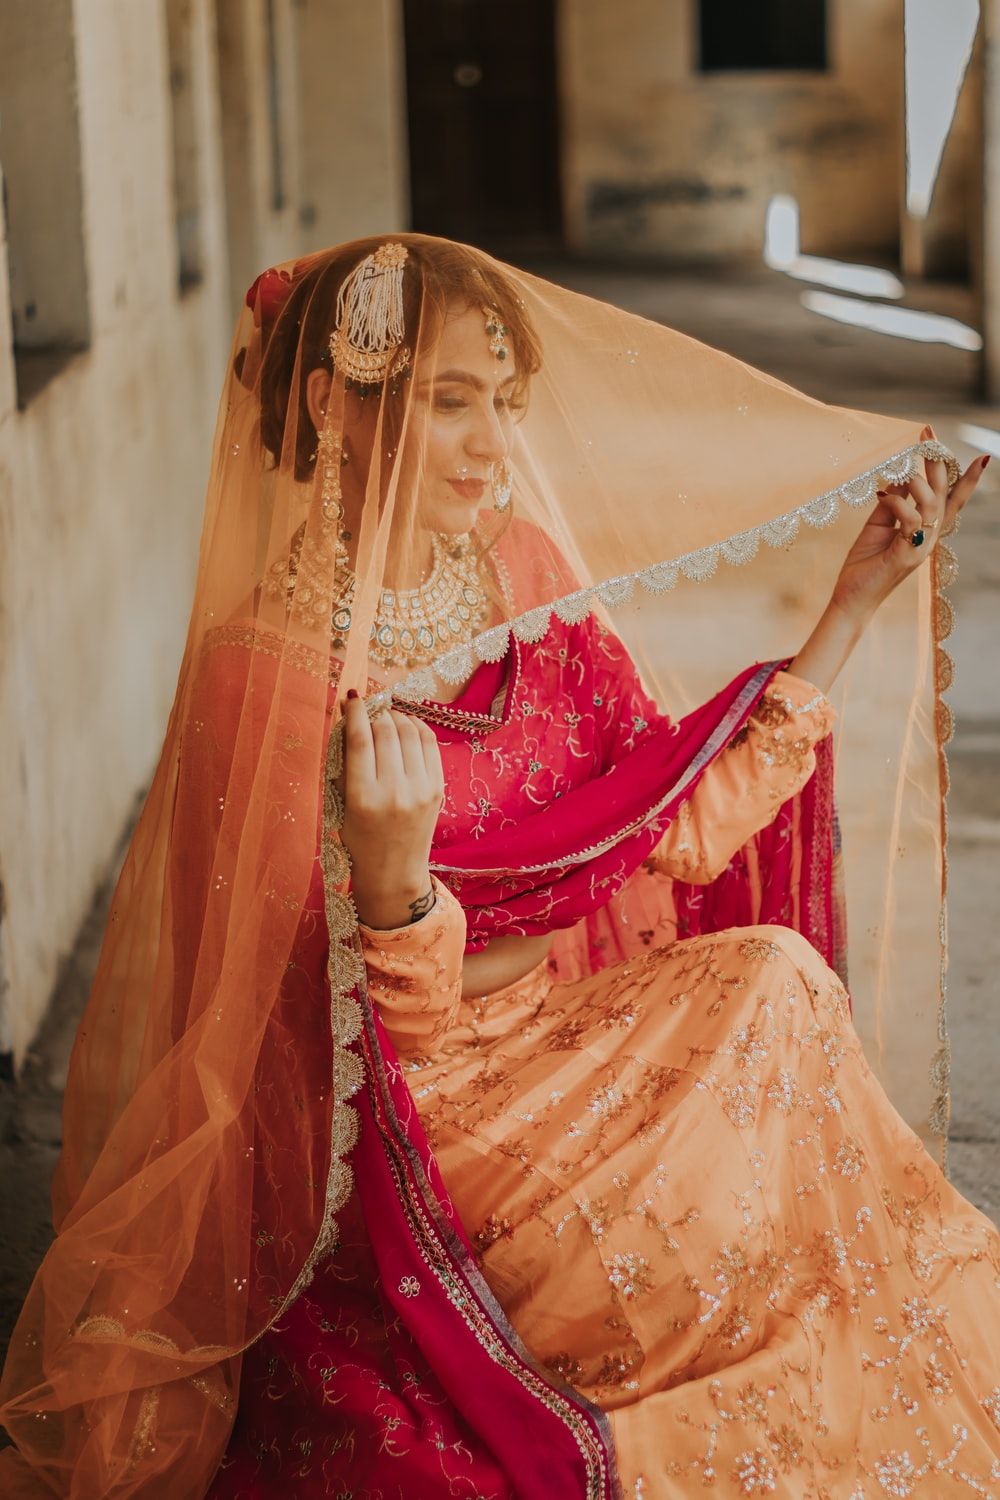 Punjabi Wedding Picture. Download Free Image